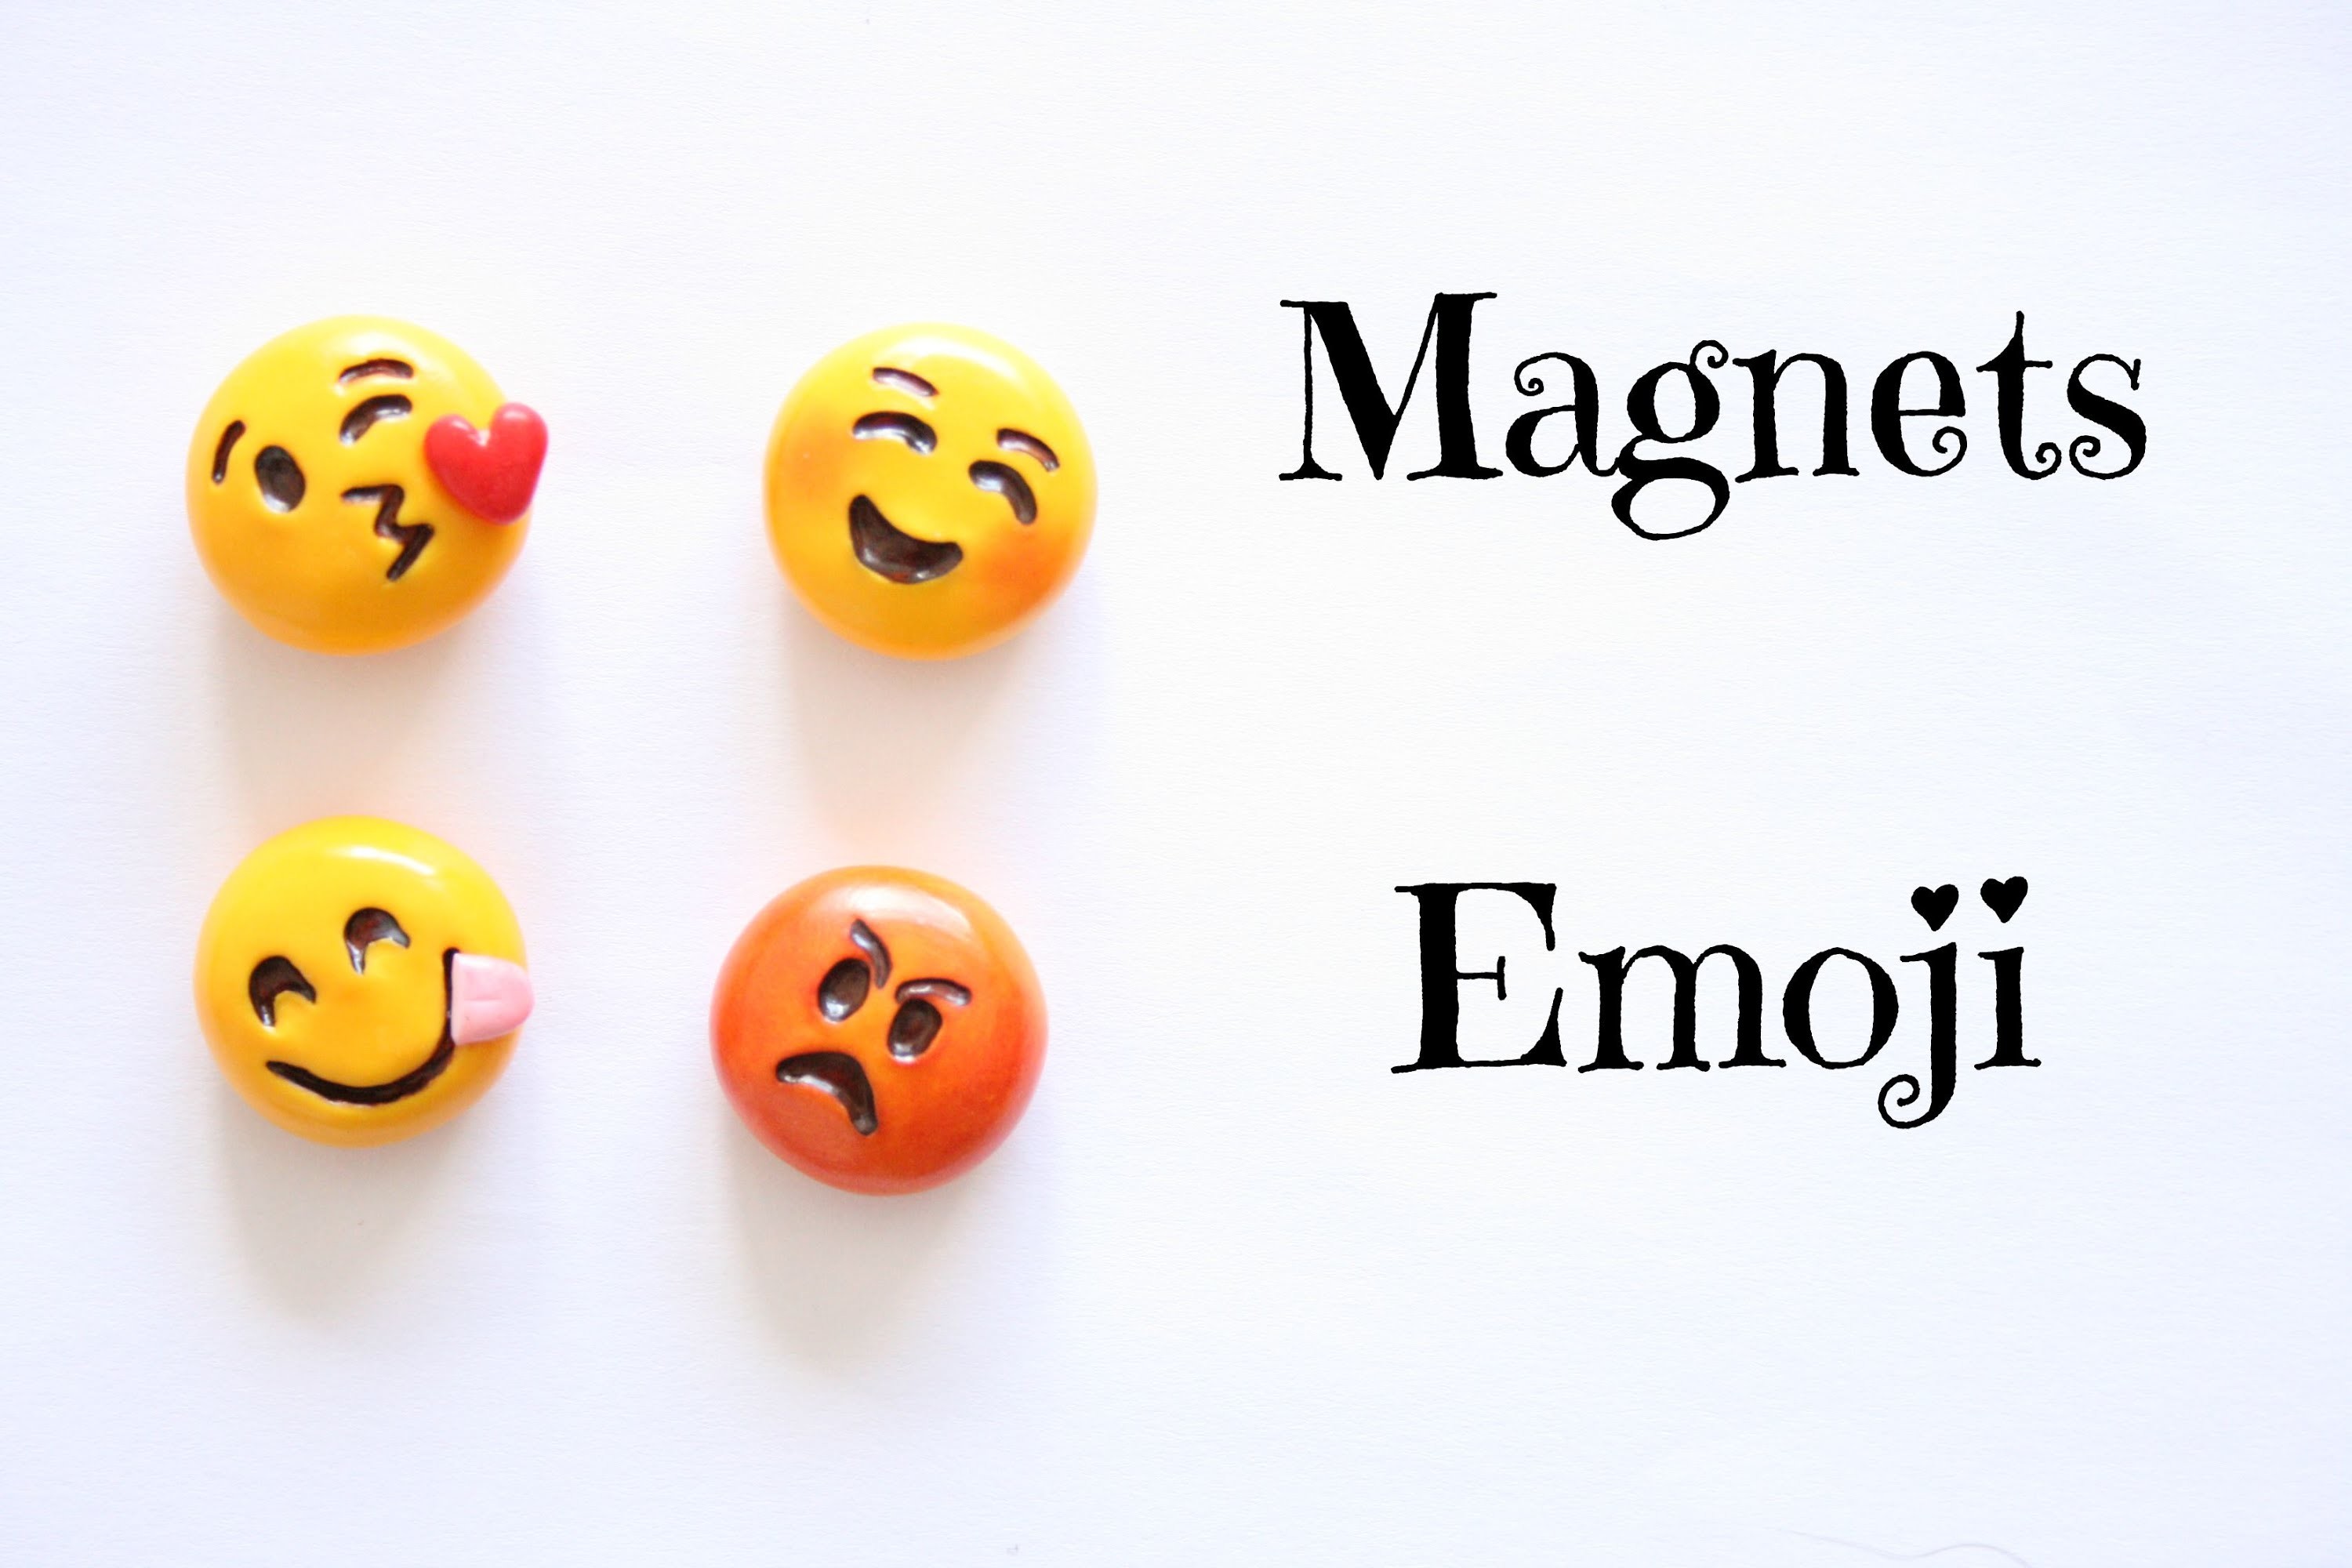 (TUTO) Magnets emoji en fimo